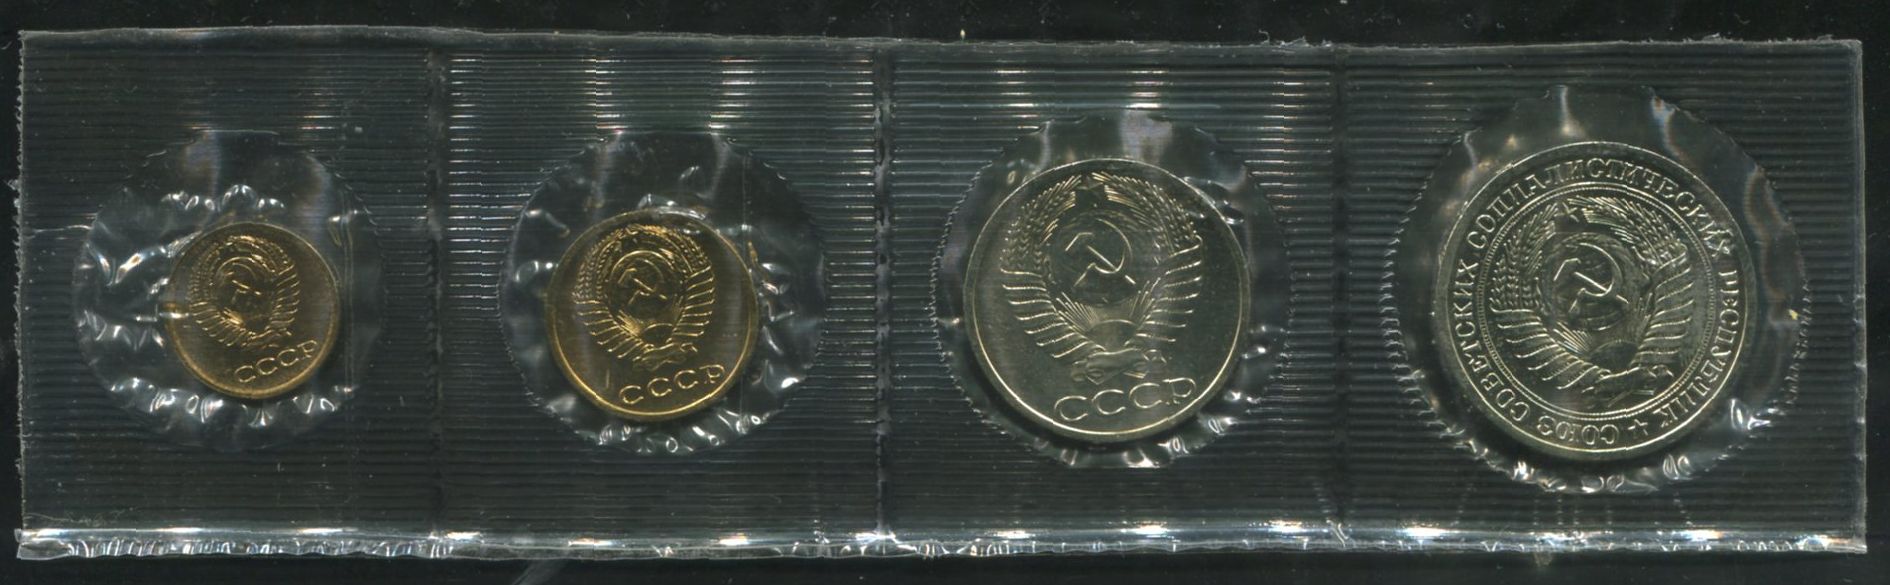 Годовой набор монет СССР 1964 (в мяг  запайке)